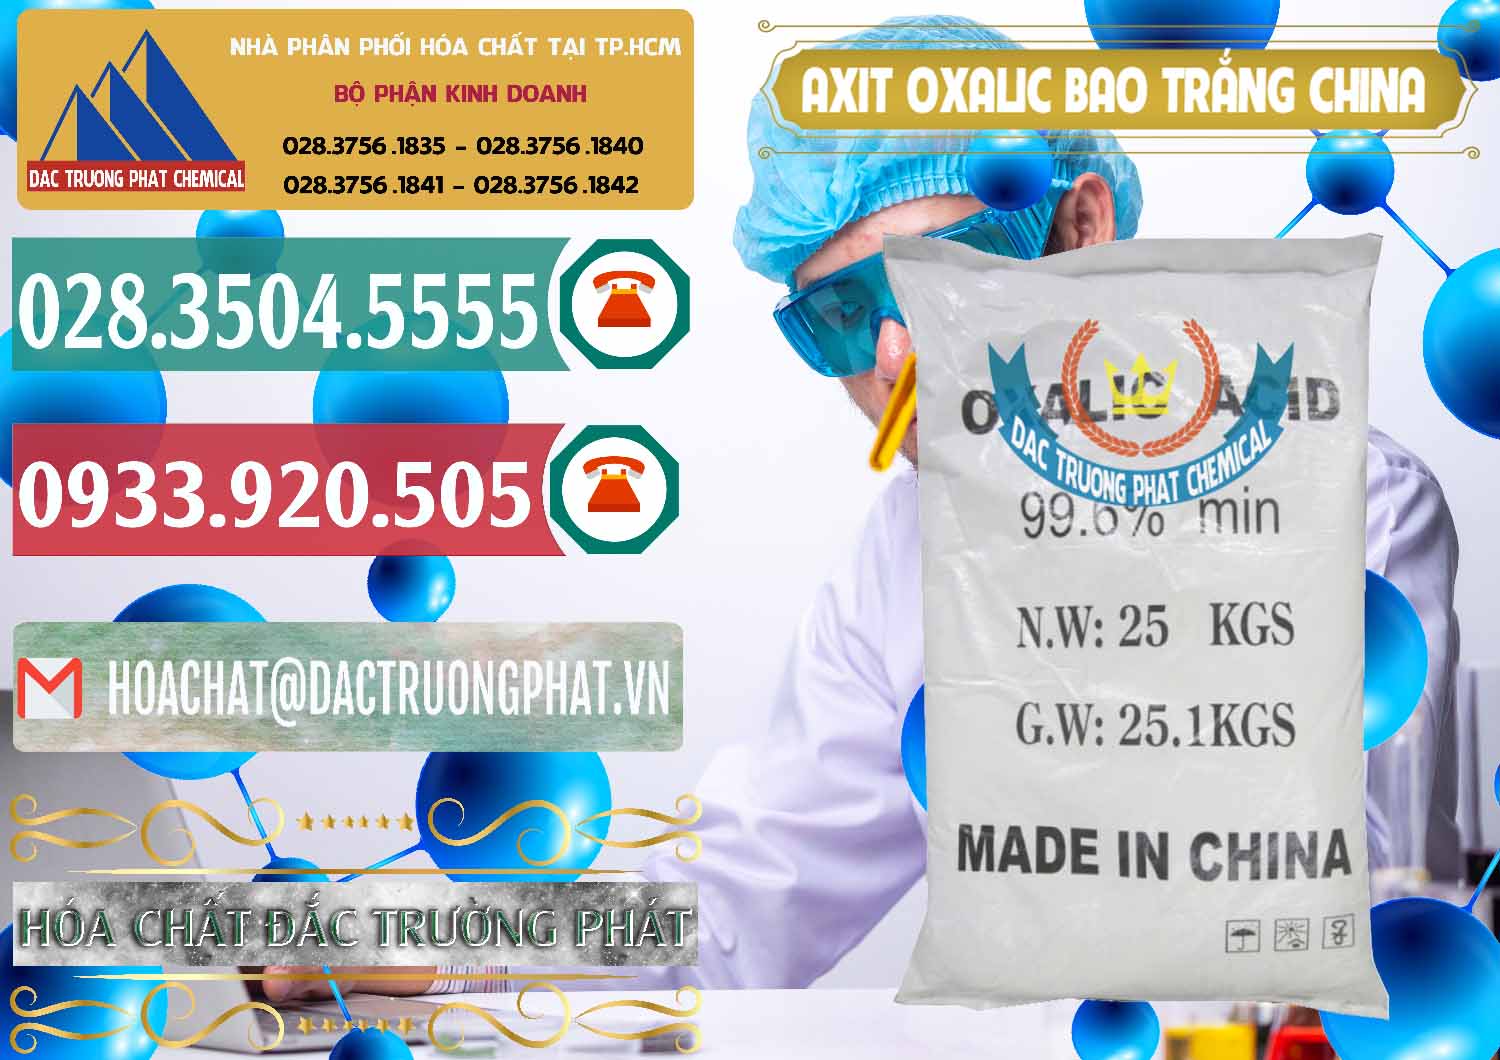 Nơi bán & cung ứng Acid Oxalic – Axit Oxalic 99.6% Bao Trắng Trung Quốc China - 0270 - Chuyên phân phối và bán hóa chất tại TP.HCM - muabanhoachat.vn